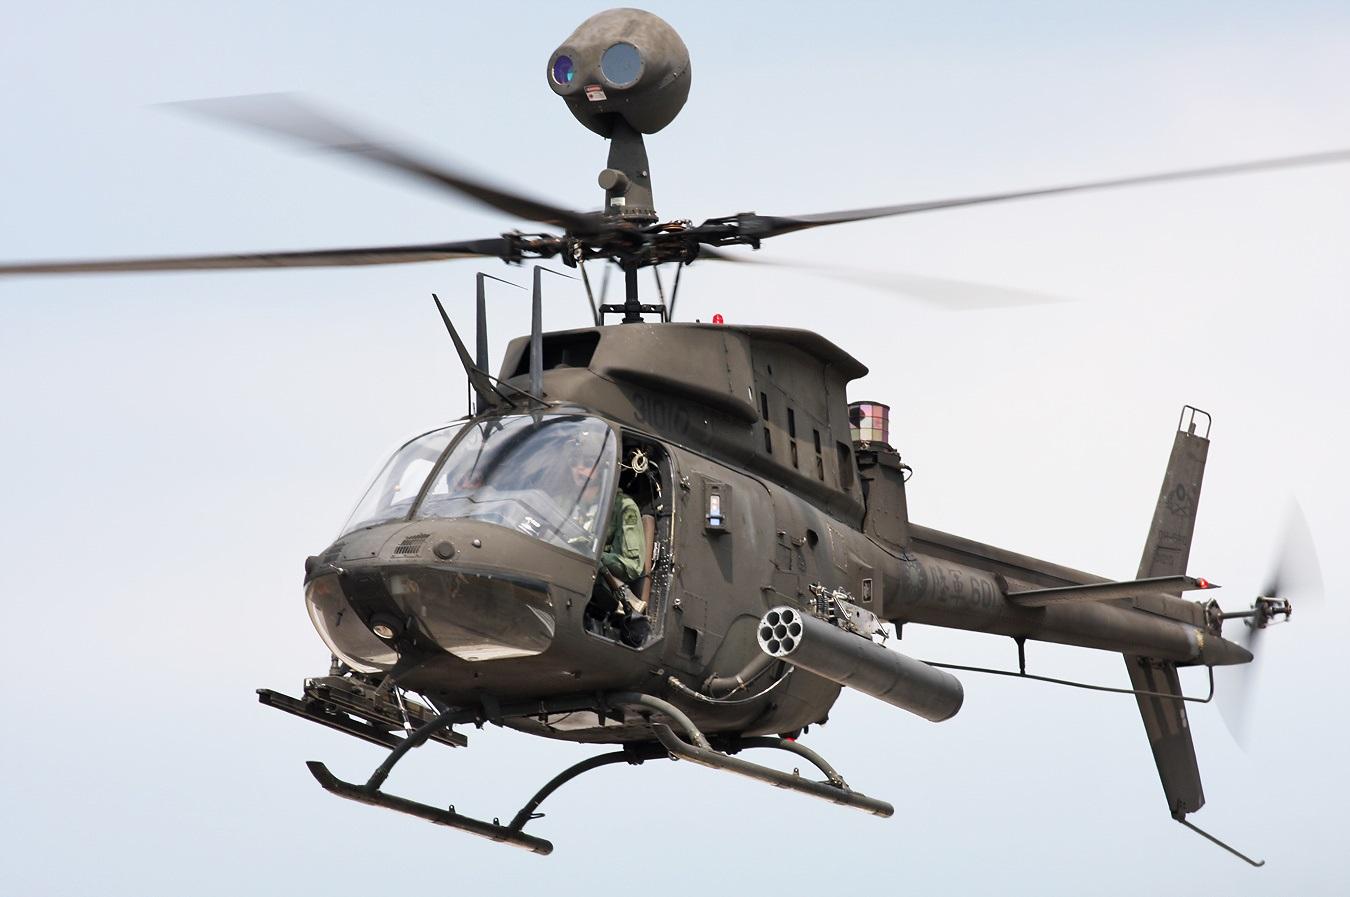 OH 58D Kiowa